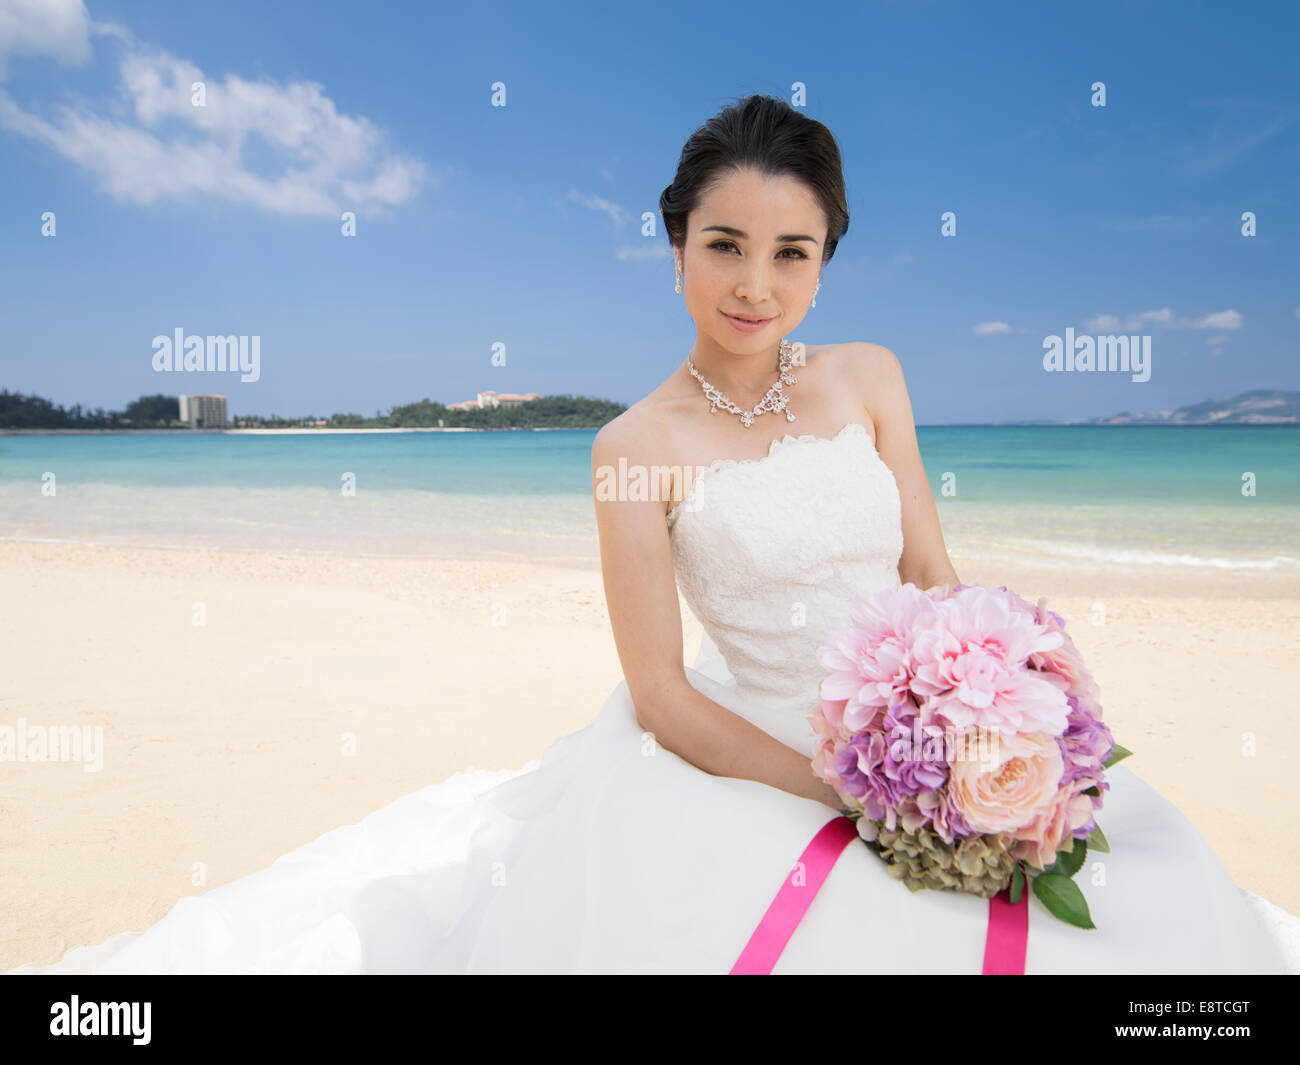 Razza mista, Asian / American sposa in bianco abito da sposa a destinazione matrimonio sulla spiaggia a Okinawa, Giappone Foto Stock